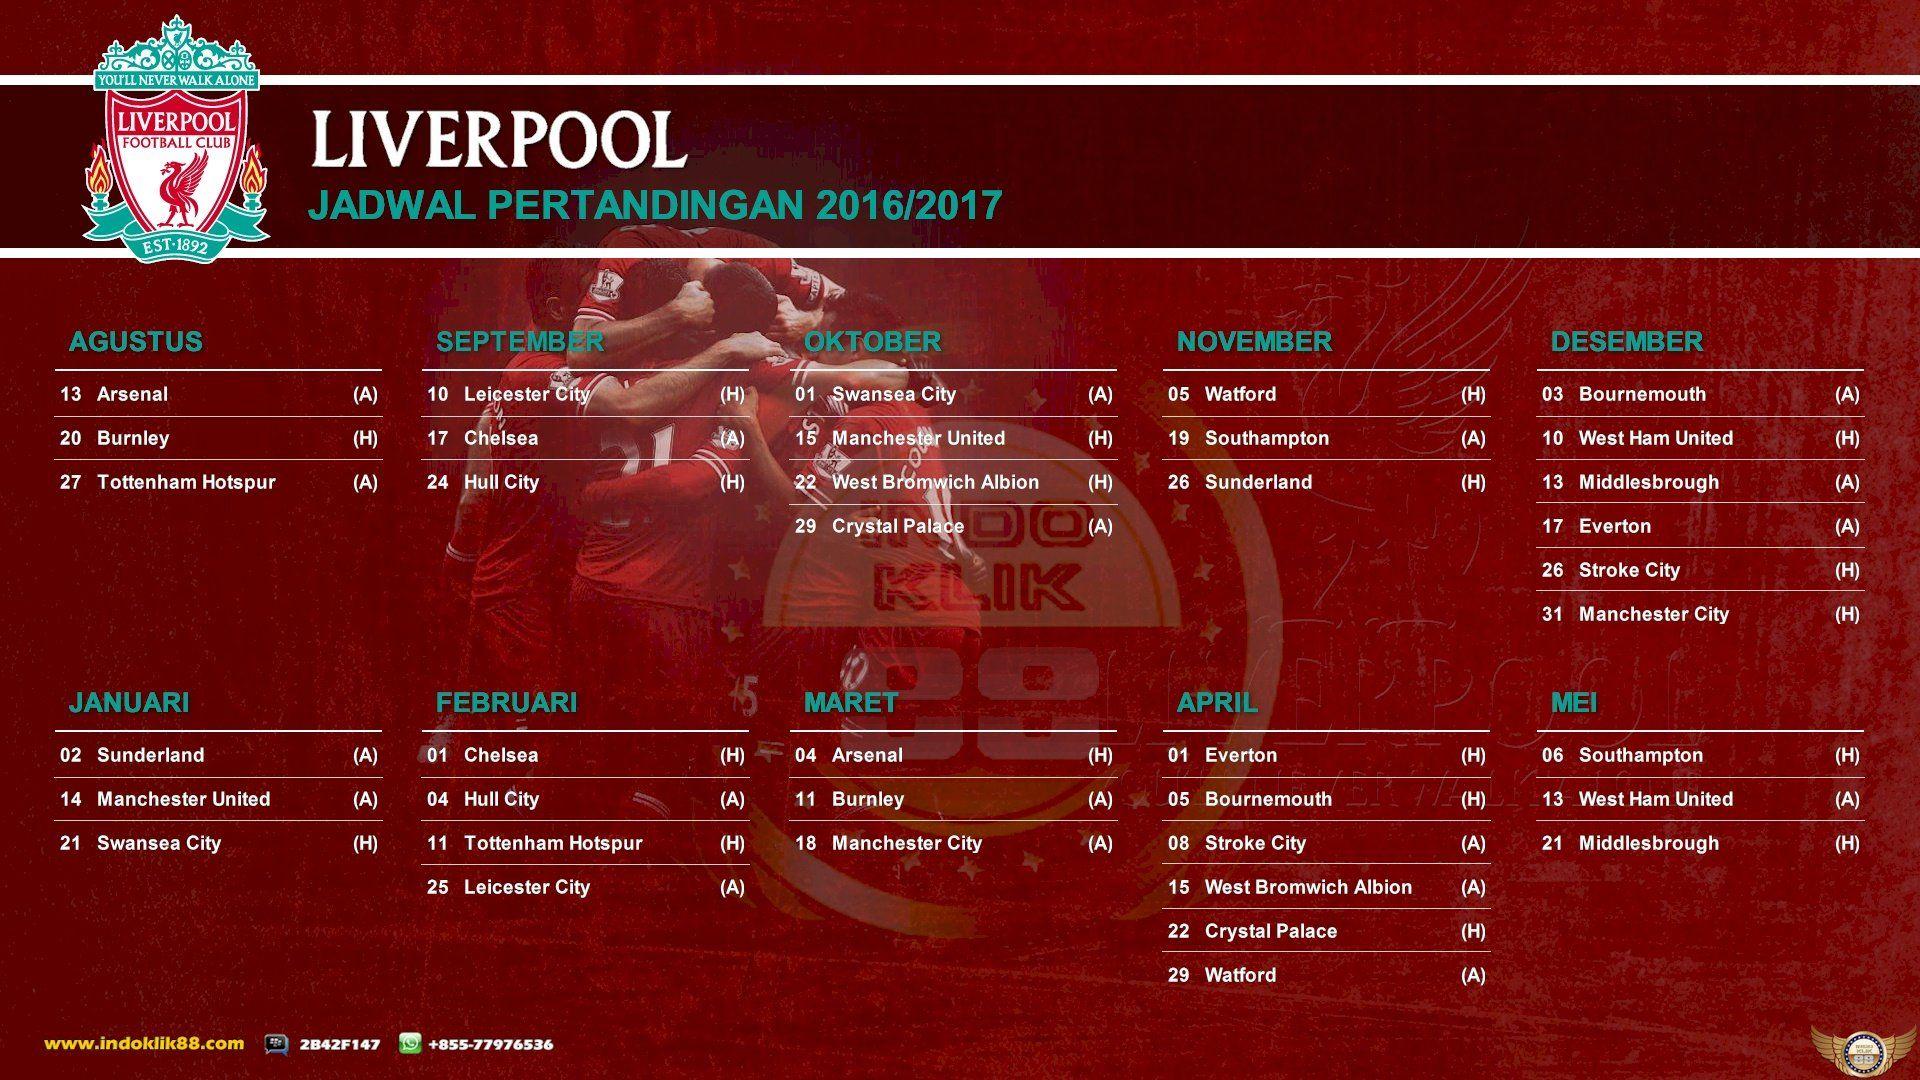 Wallpaper Jadwal Pertandingan Liga Inggris Liverpool 2016 2017